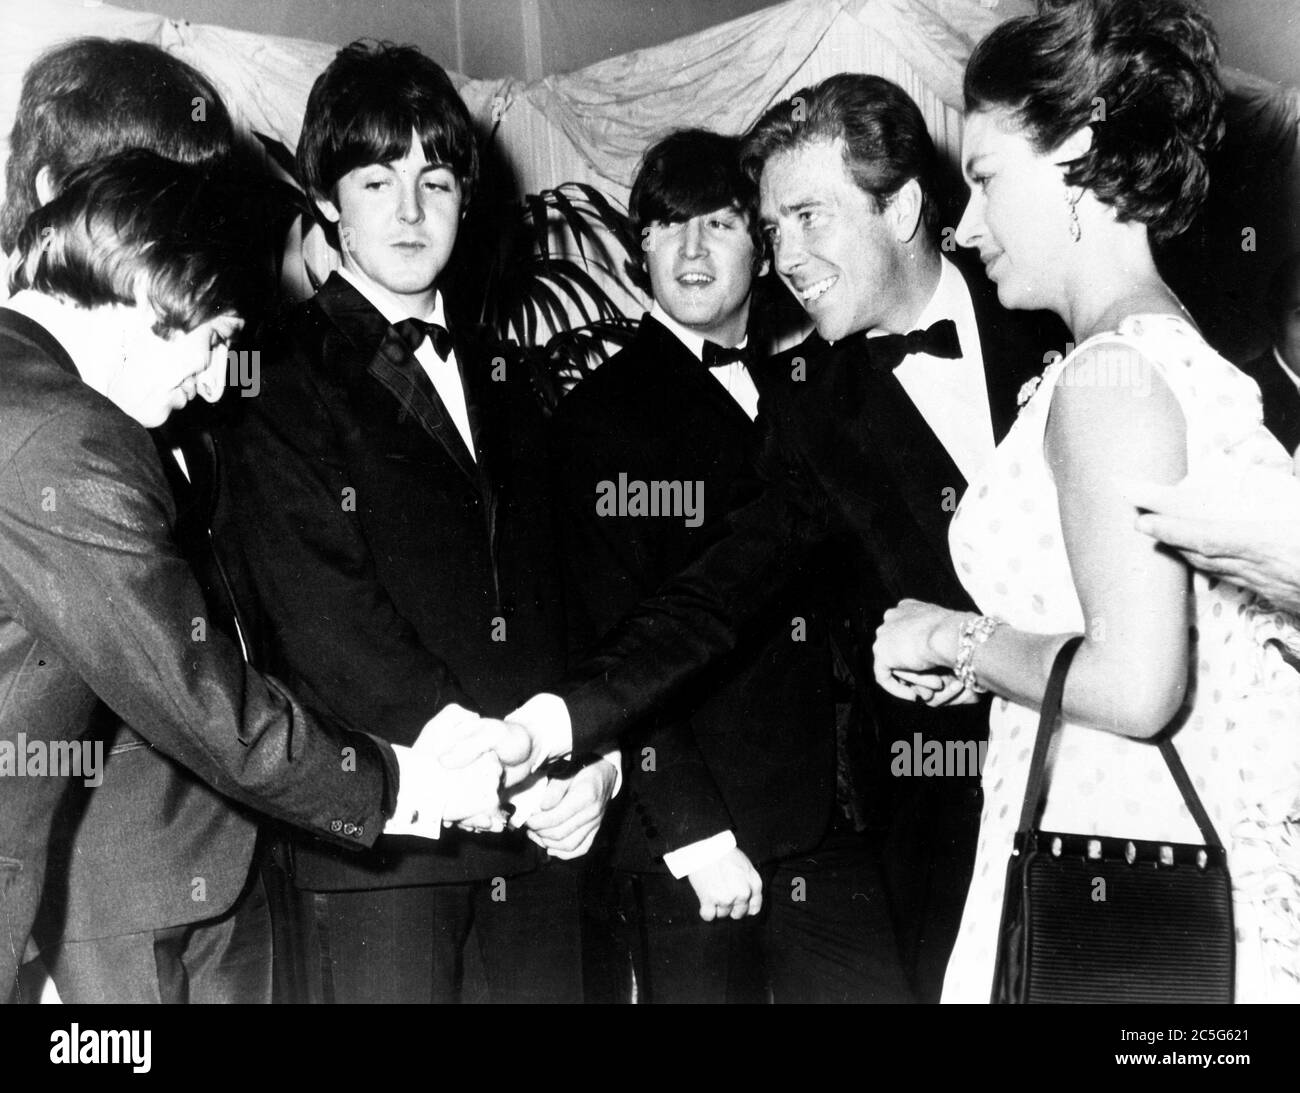 30 luglio 1965 - Londra, Inghilterra, Regno Unito - S.R.H. LA PRINCIPESSA MARGARET, destra, accompagnata dal marito Lord SNOWDON, secondo da destra, alla prima mondiale DEL nuovo film DEI BEATLES "Aiuto", che ha avuto luogo al London Pavilion. Lord Snowdon scuote le mani con RINGO STARR, a sinistra, come la Principessa, PAUL McCartney, secondo da sinistra, JOHN LENNON, centro, e i Beatles si incontrano alla proiezione del film. (Credit Image: © Keystone Press Agency/Keystone USA via ZUMAPRESS.com) Foto Stock